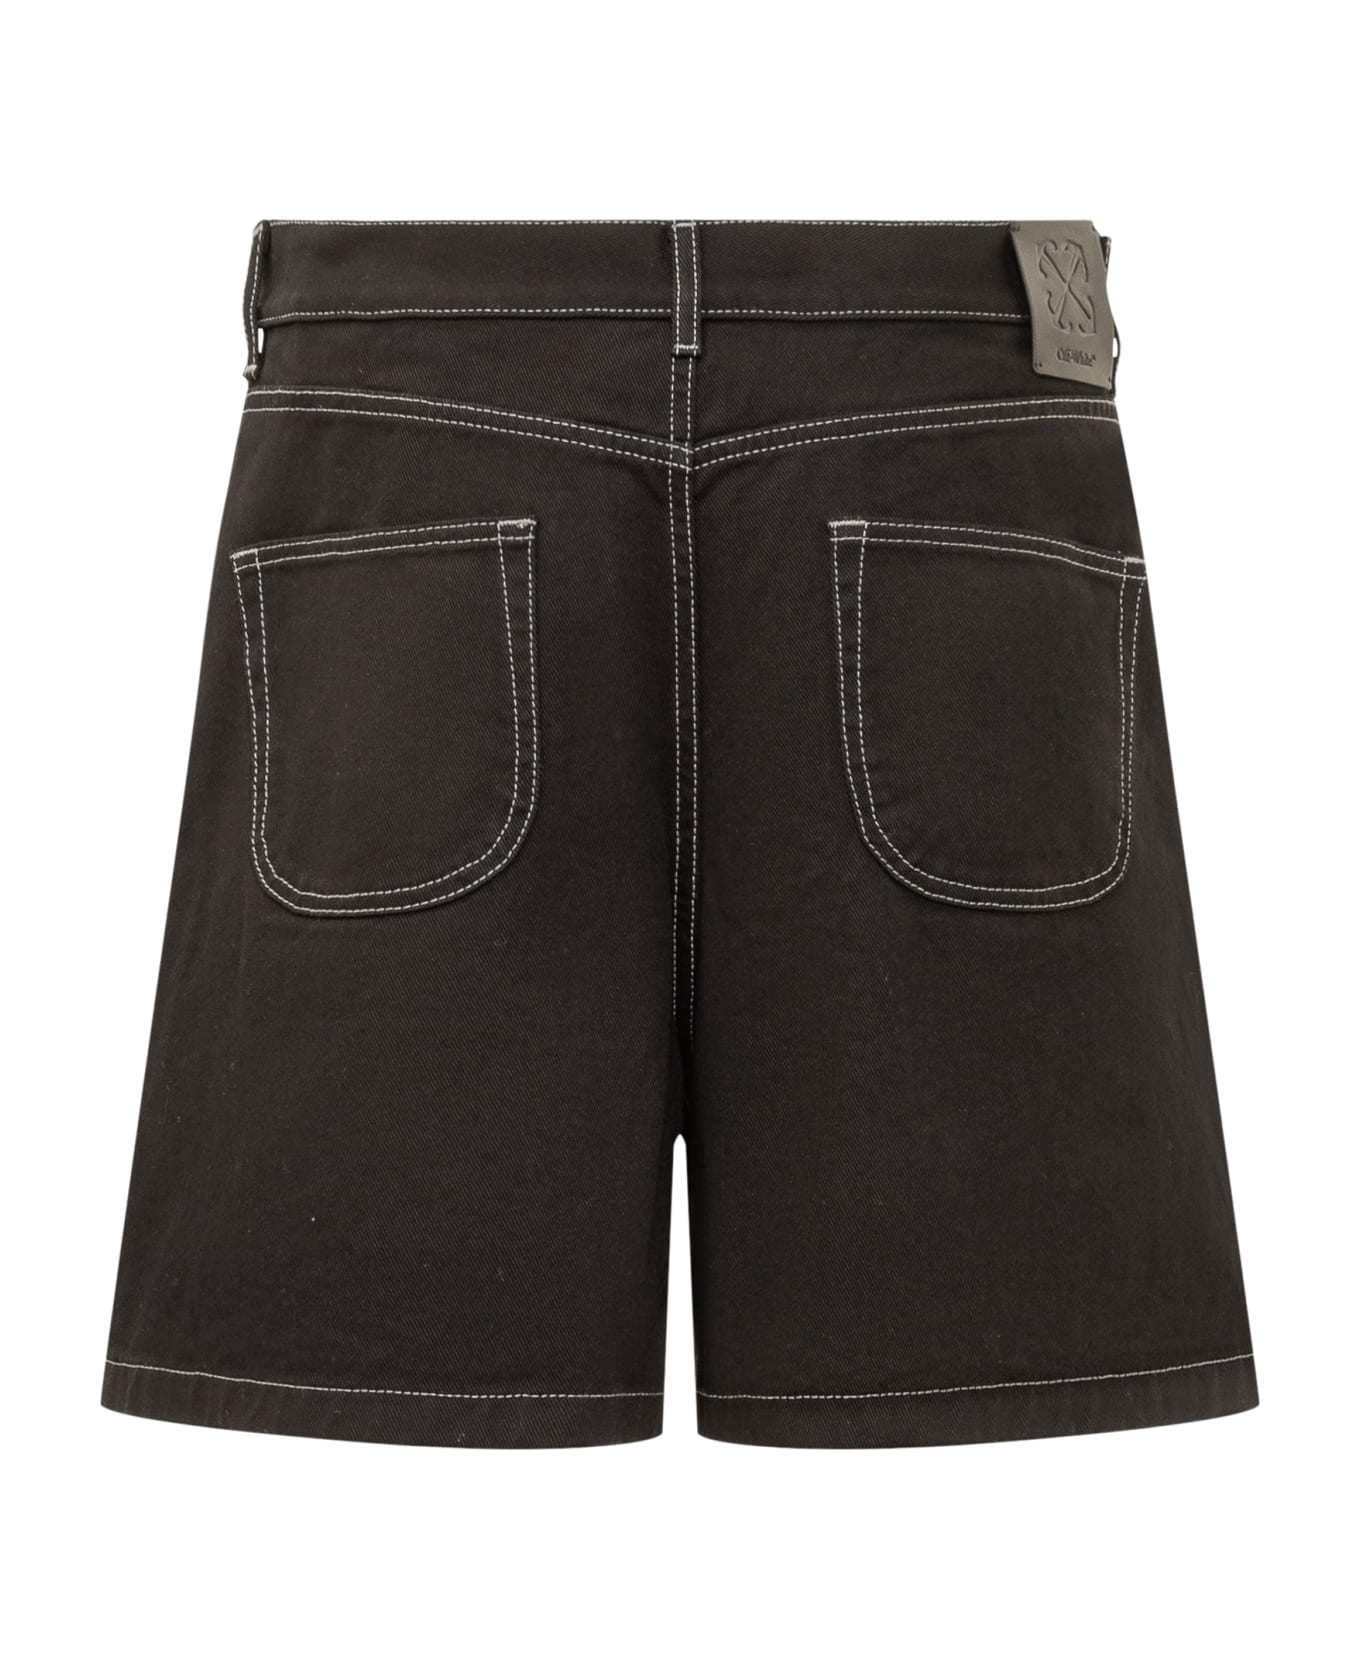 Off-White Denim Shorts - RAW BLACK ANGORA ショートパンツ